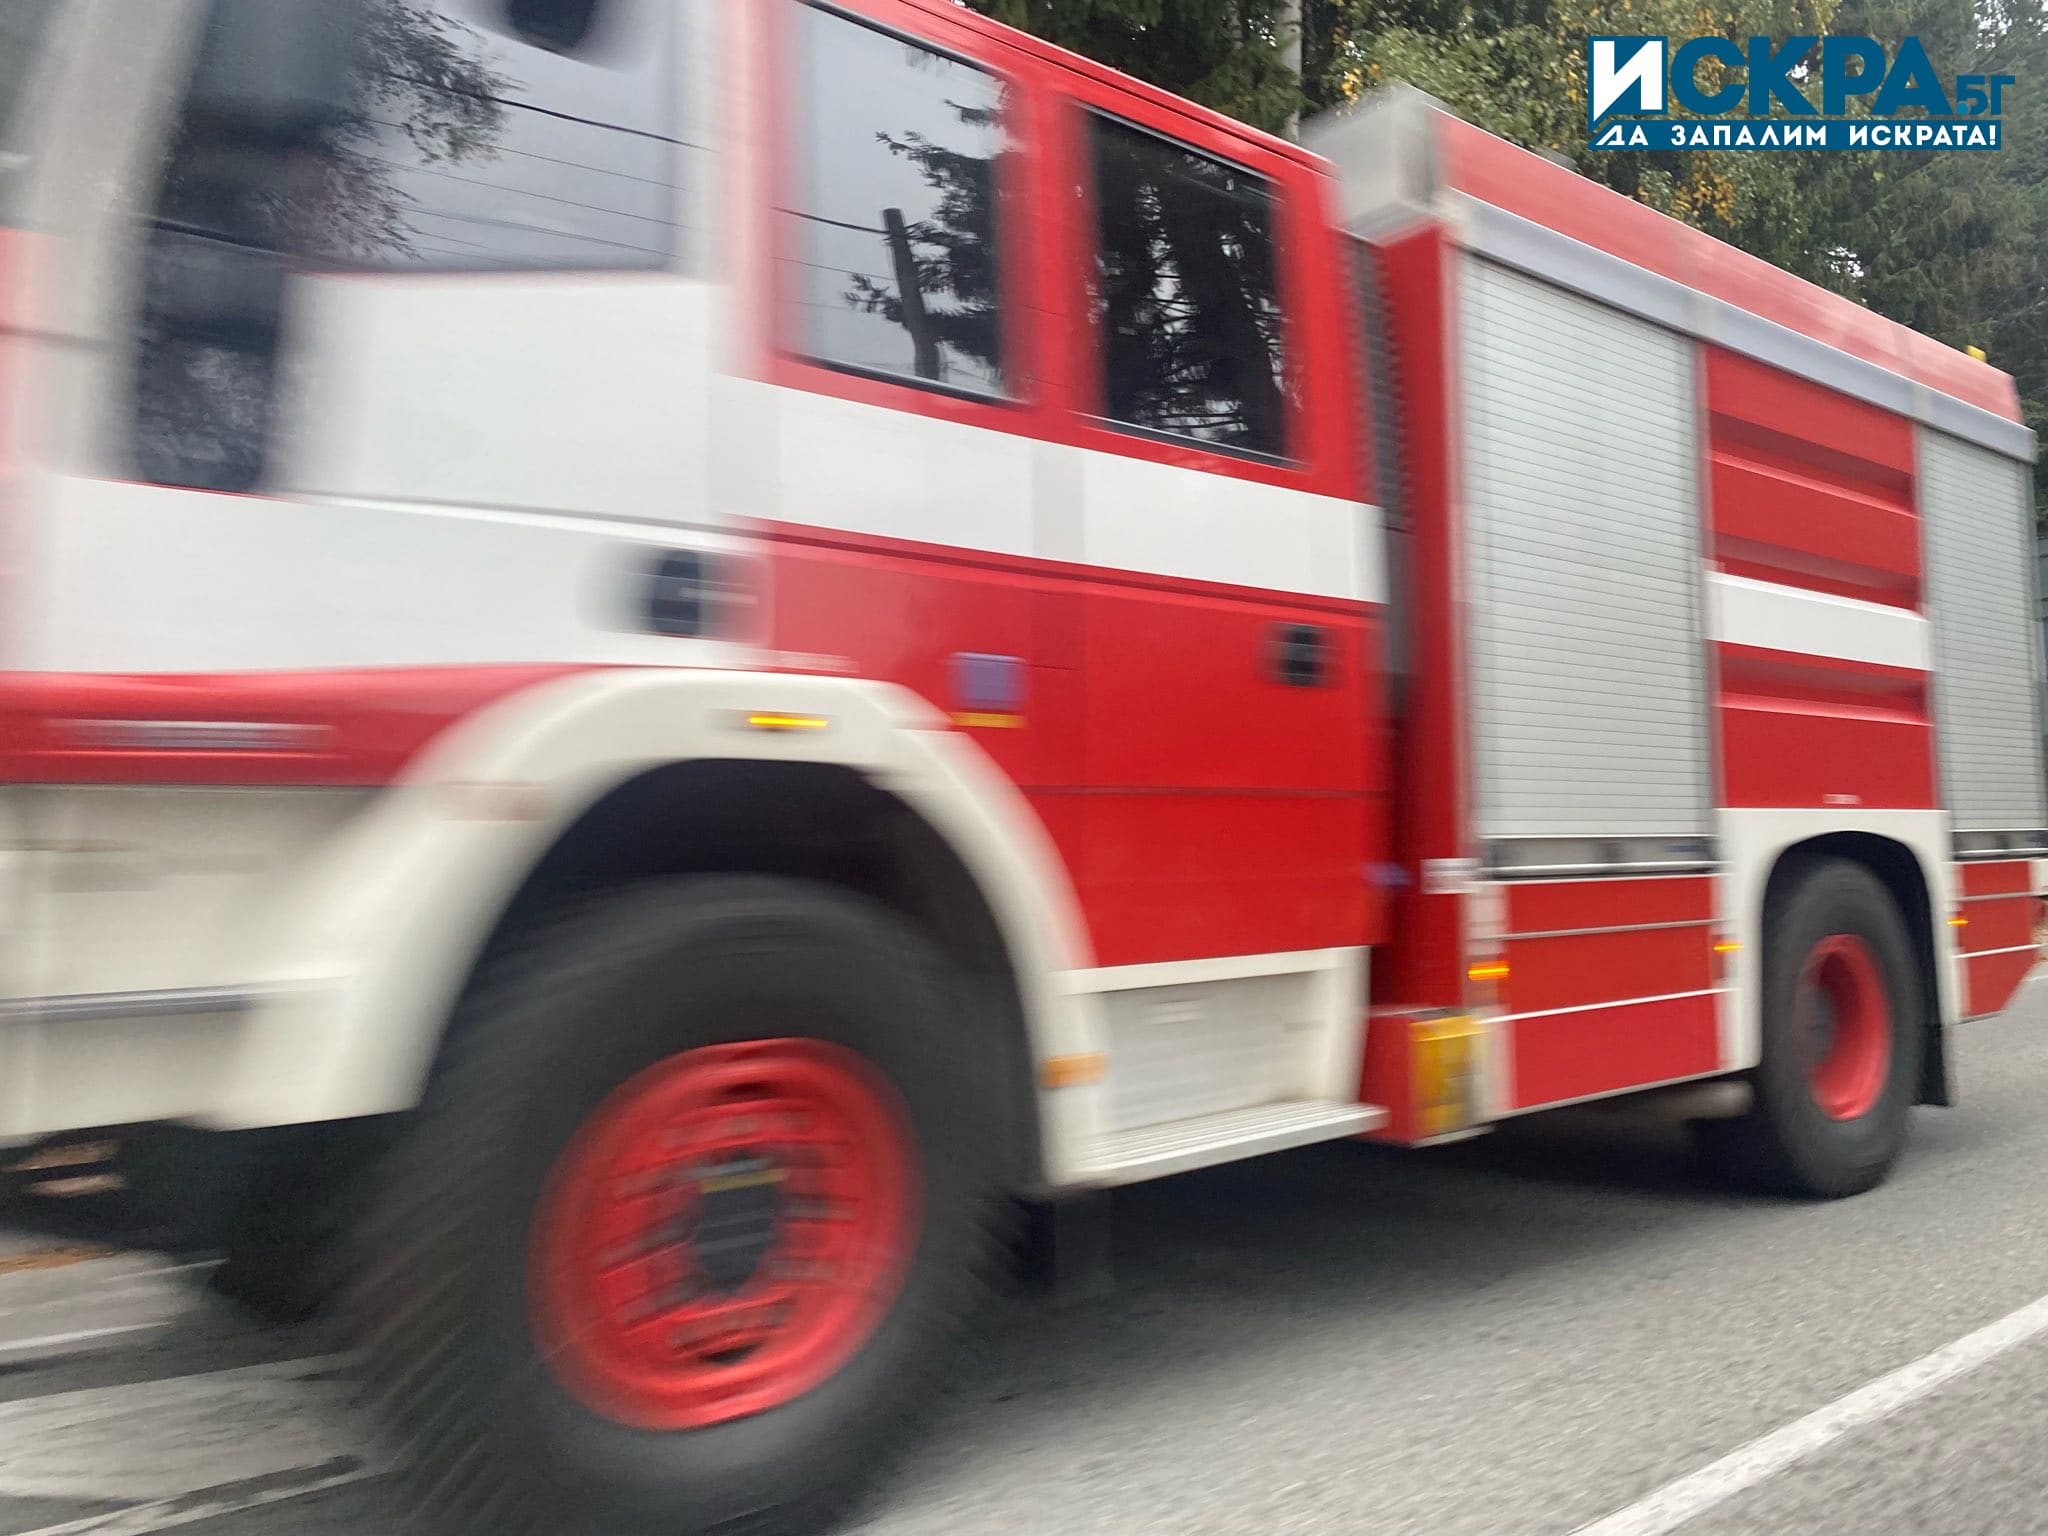 47-годишен мъж е пострадал при пожар в Сливен. Сигнал за